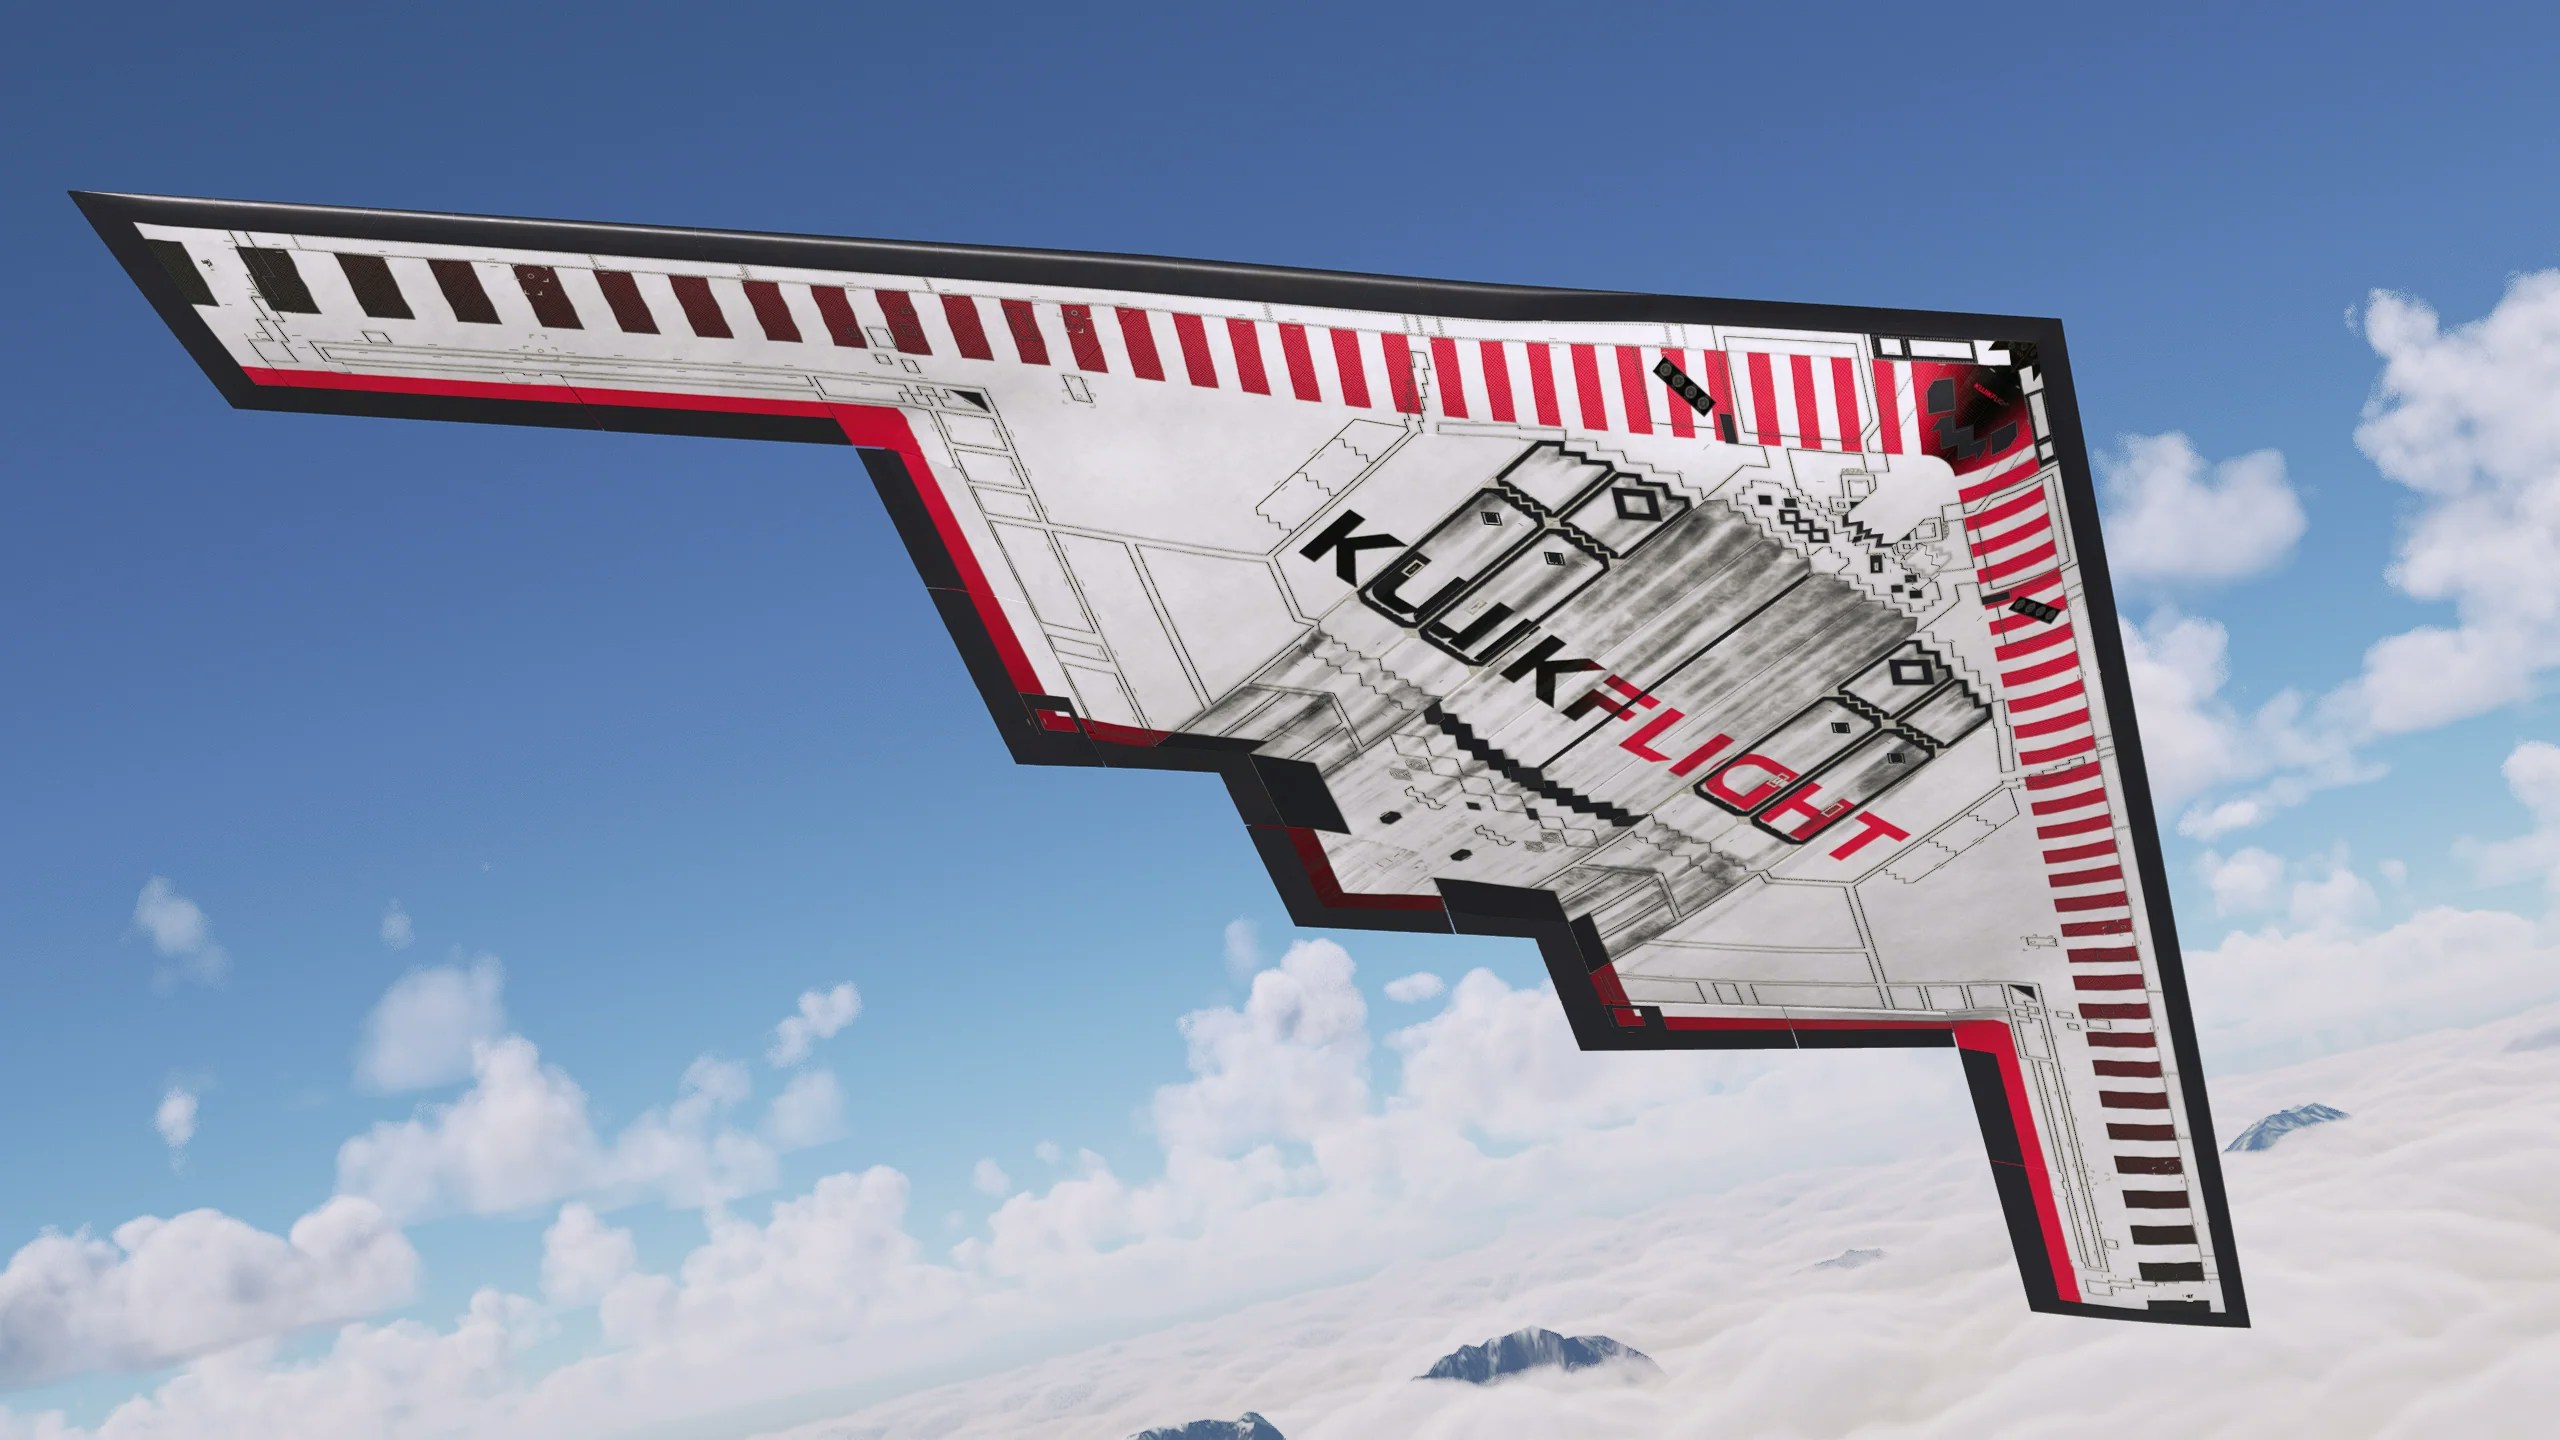 KwikFlight Releases "Ninja of the Skies" Spirit